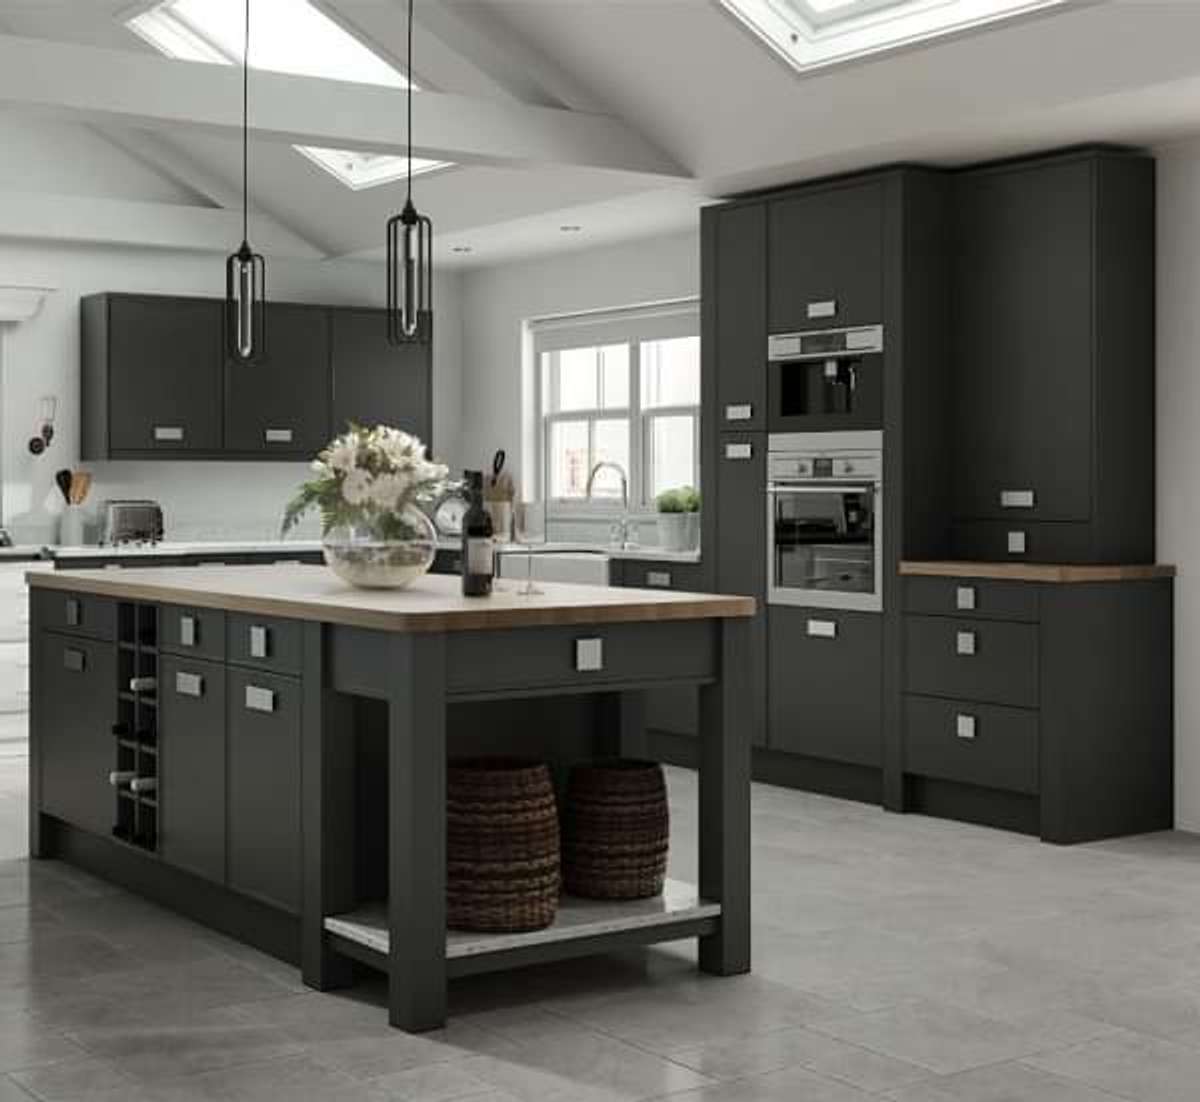 #kitchen
Black Kitchen Designs